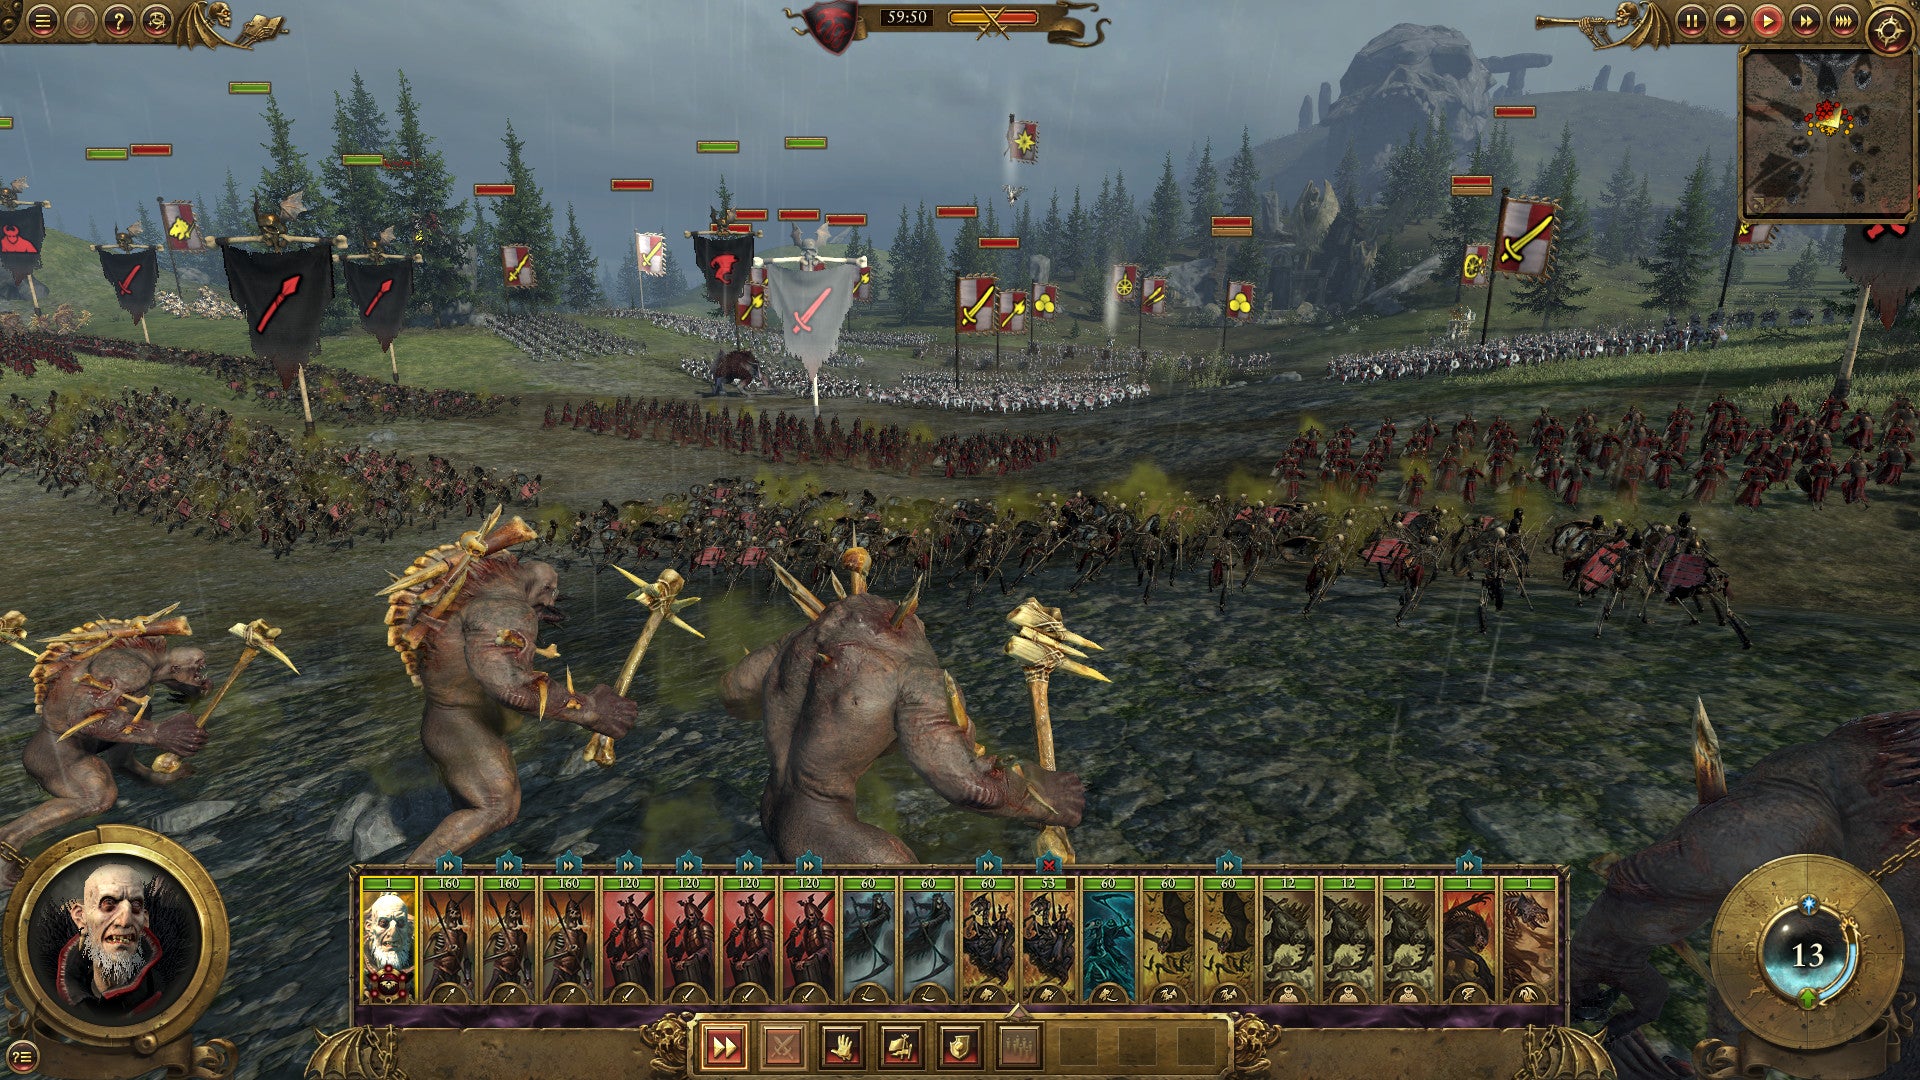 A pestilent army in a Total War: Warhammer screenshot.